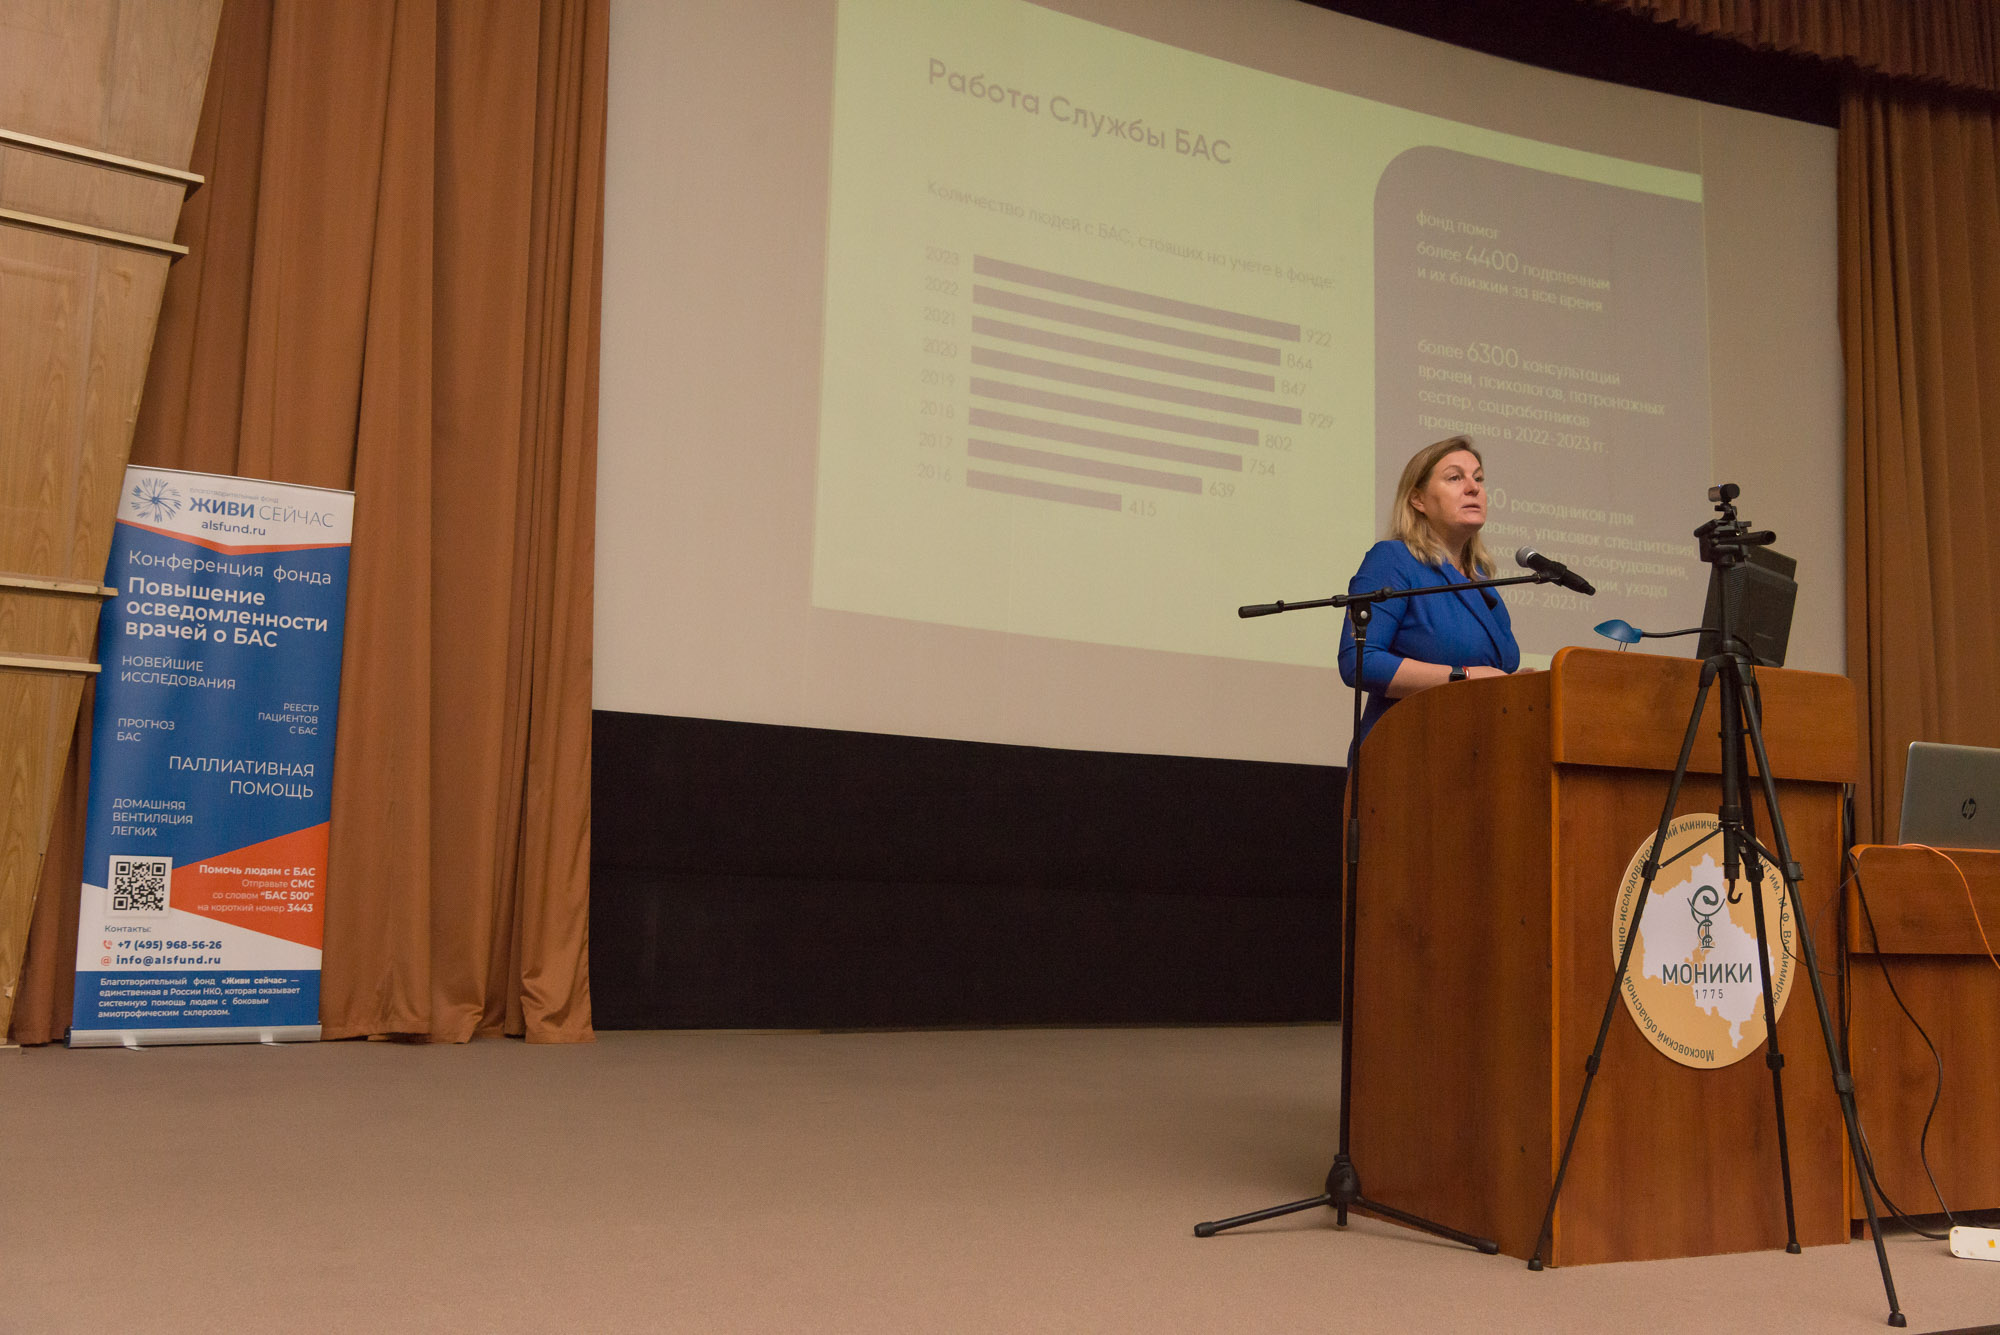 Конференция “Паллиативная помощь в неврологии: фокус на БАС” прошла с участием врачей Московской области